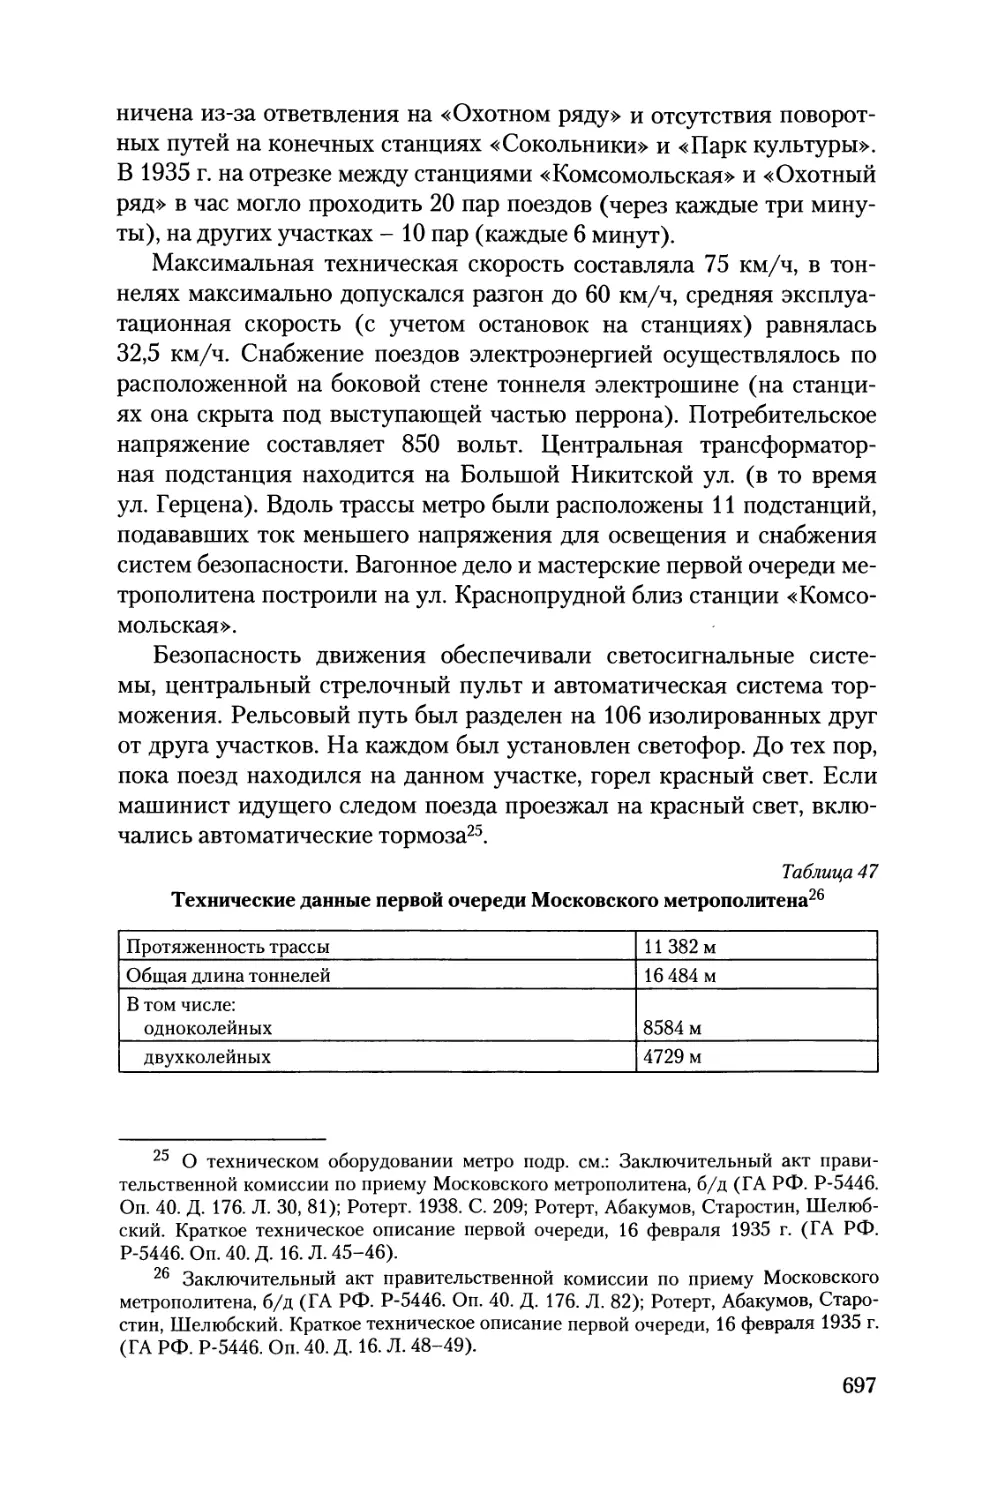 Приложение II. Секретные линии и военные функции московского метро